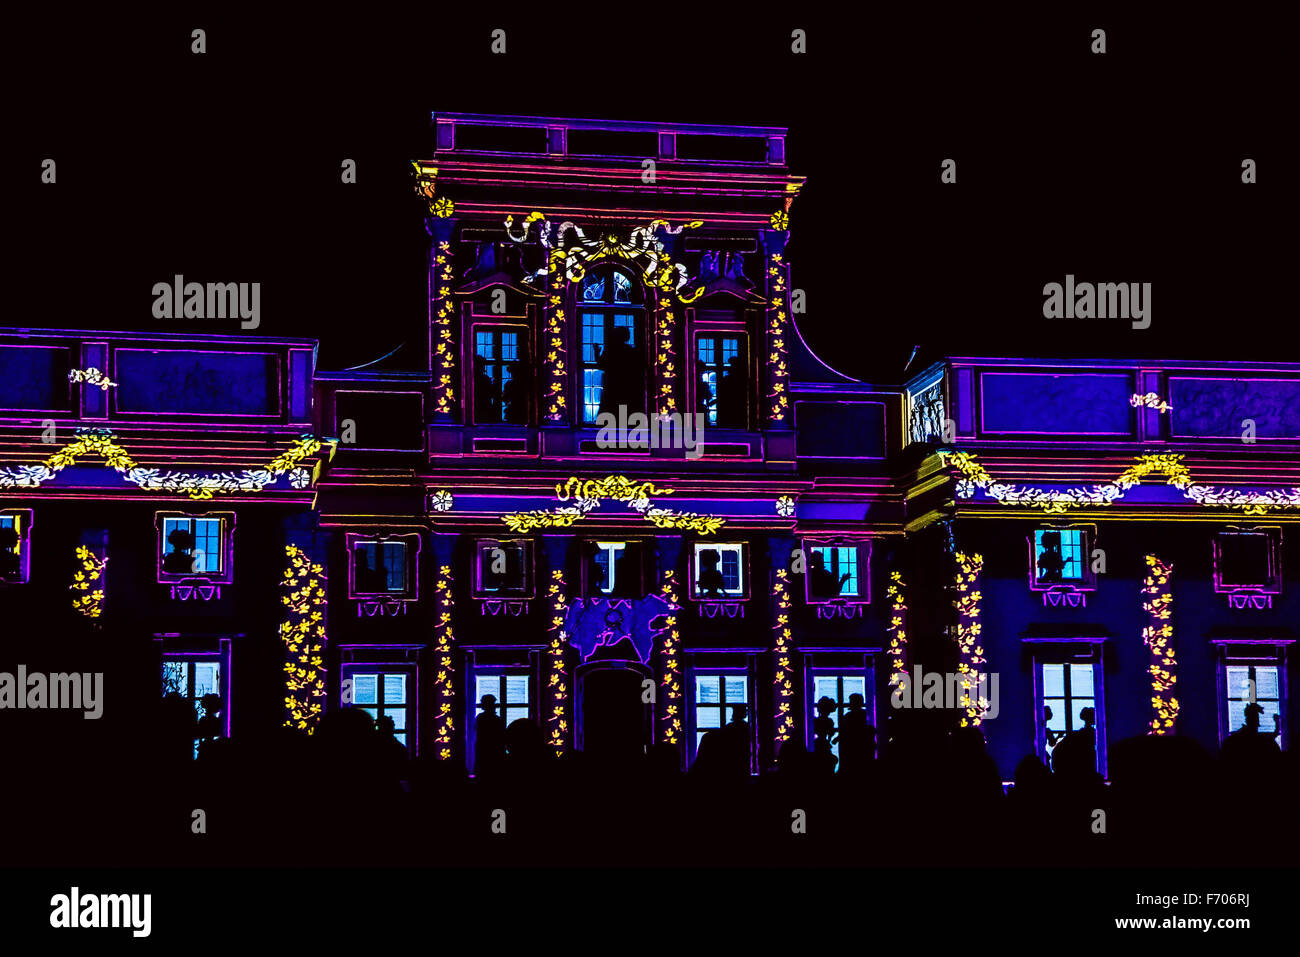 Fachada del Palacio o edificio antiguo con siluetas de personas. Video-Mapping muestran en la fachada del Palacio de Wilanow Foto de stock